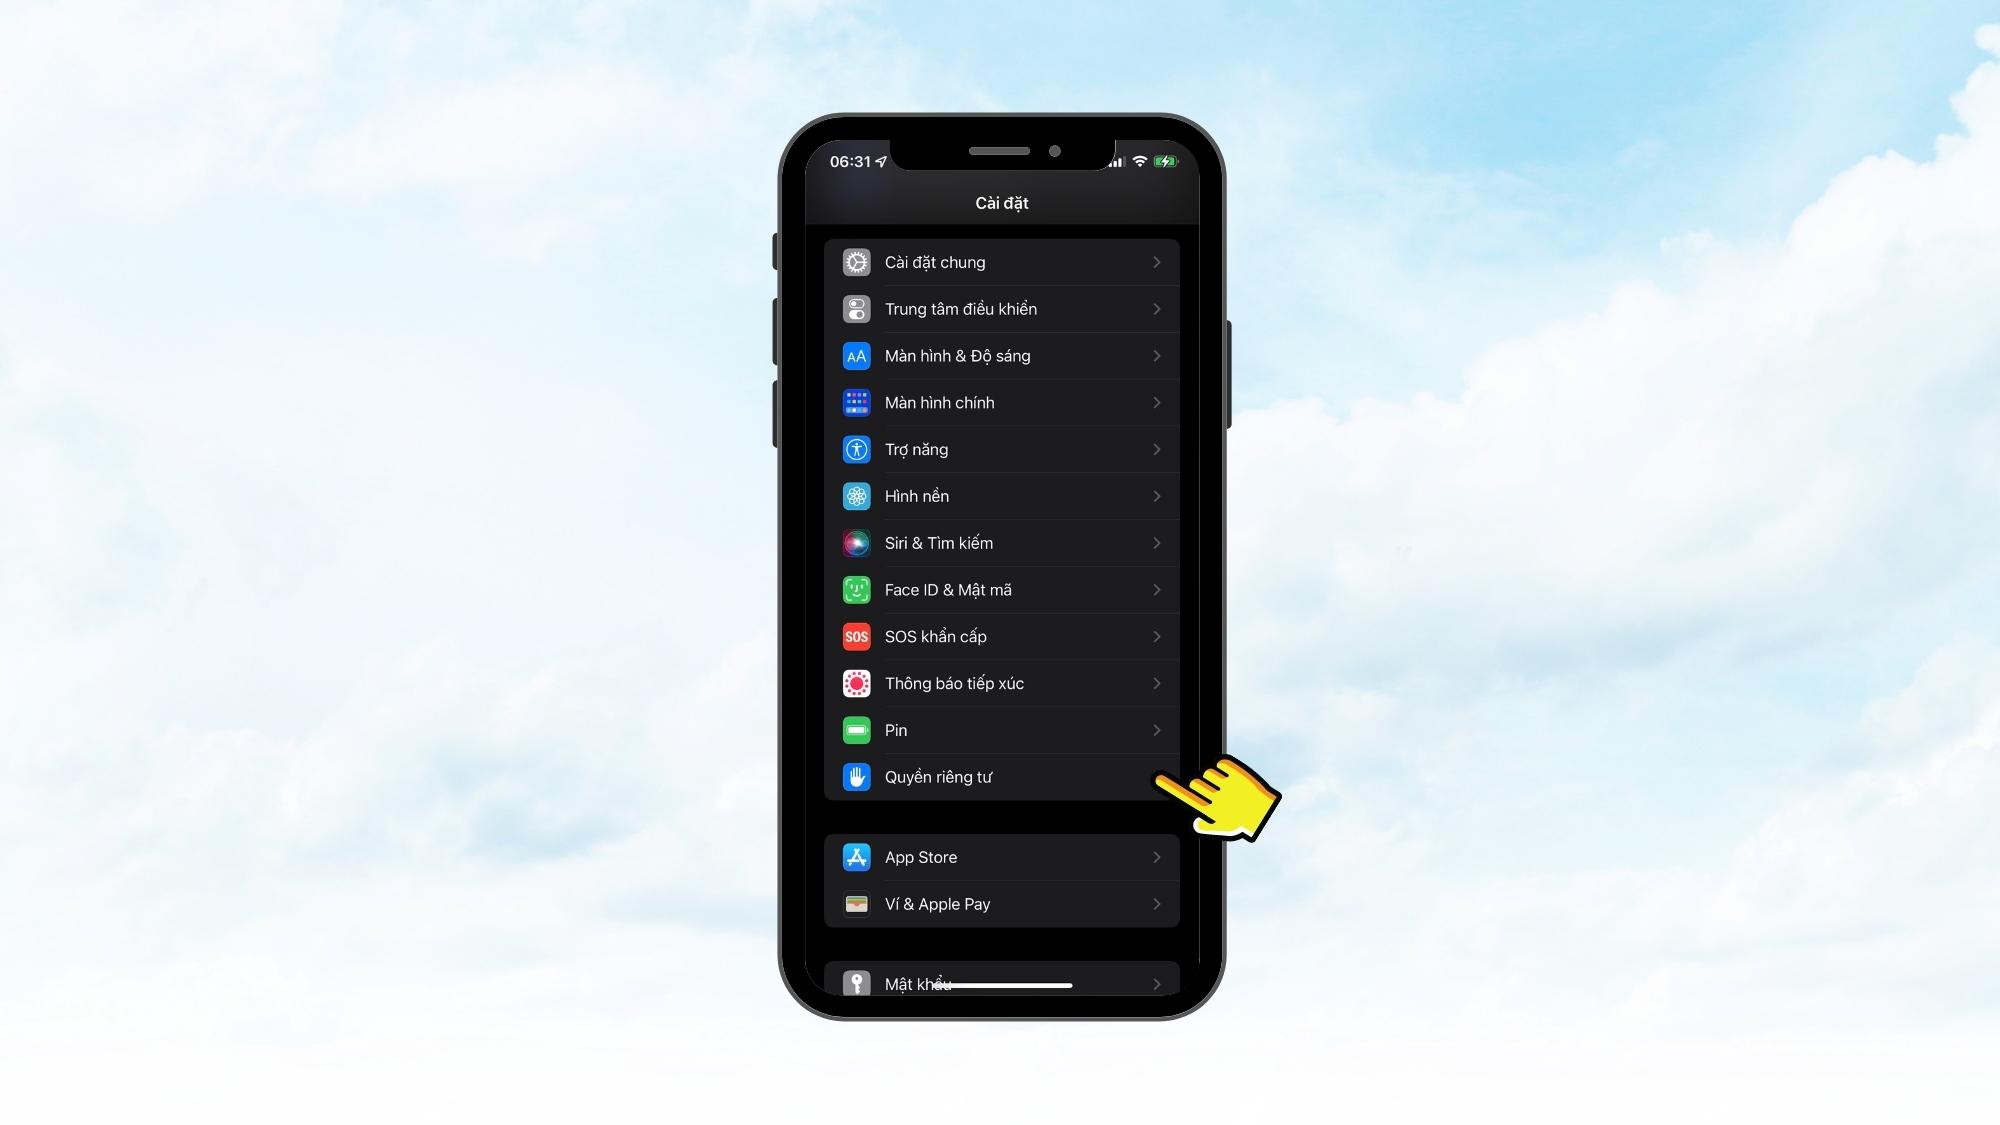 Tắt các tính năng chia sẻ vị trí trên iPhone, MacBook - Mẹo bảo mật iPhone - Bước 1